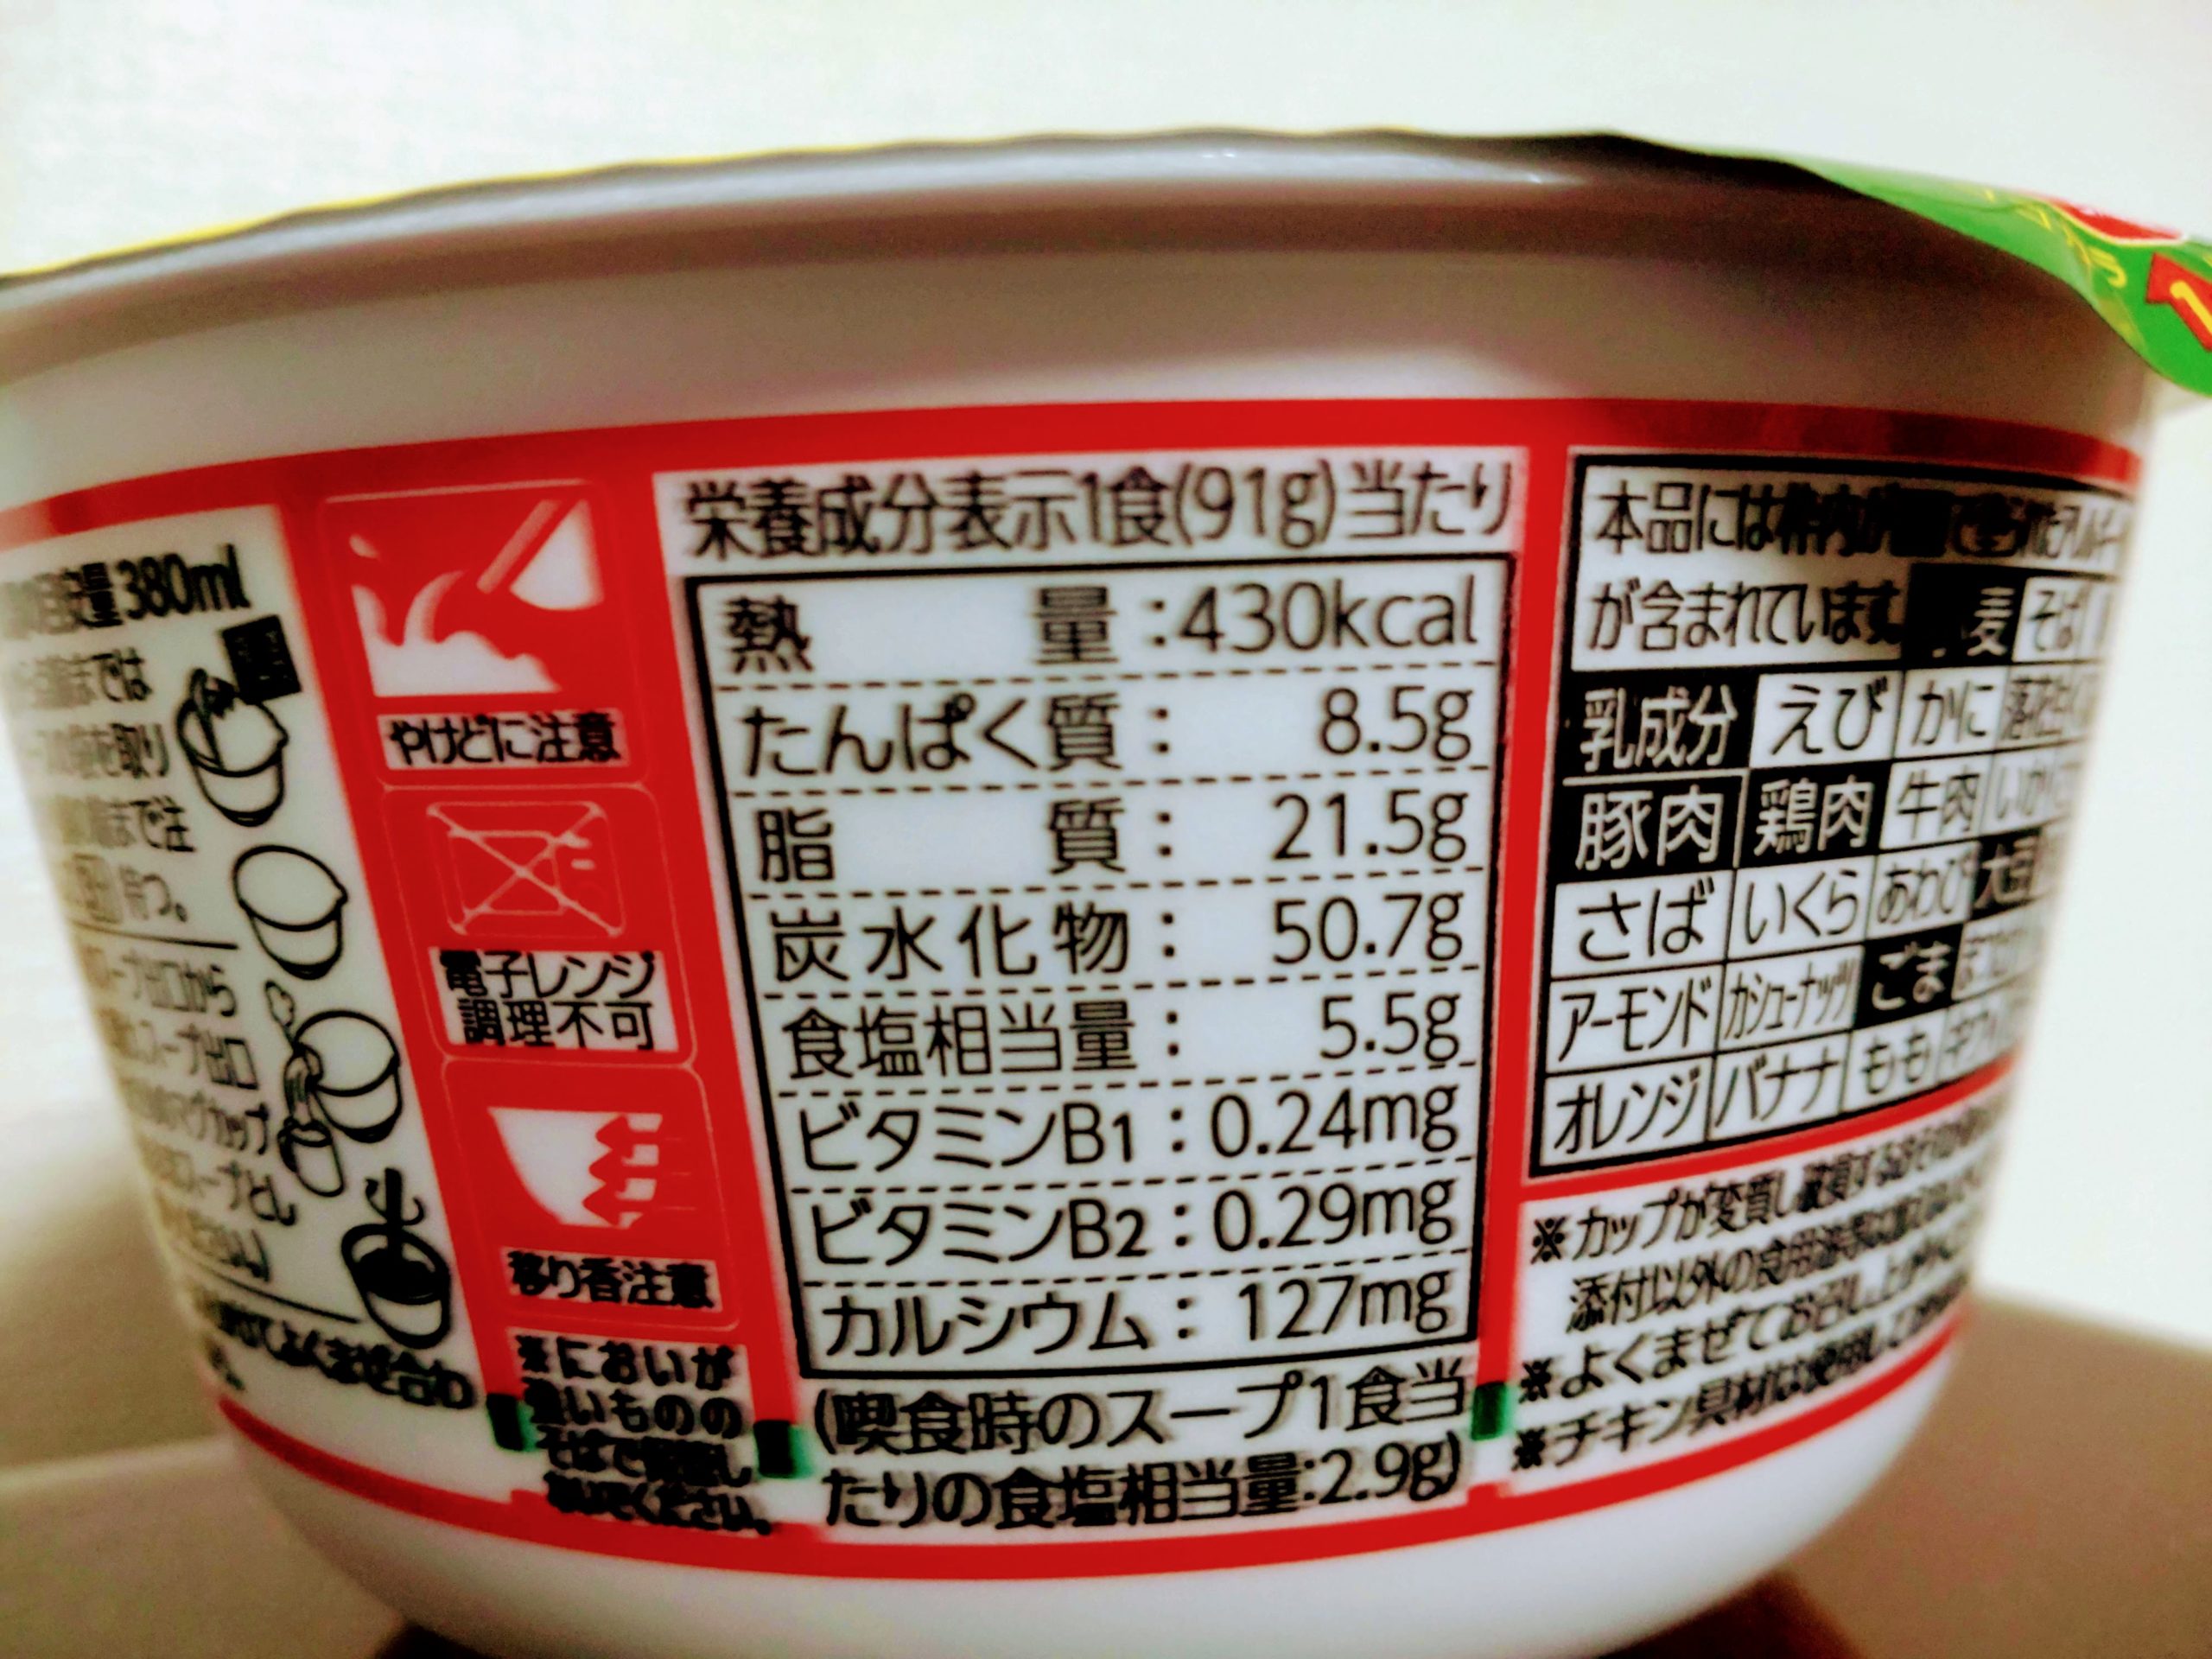 チキンラーメン汁なしどんぶり 平成のイタ飯ブーム ペペロンチーノ味の栄養成分表示